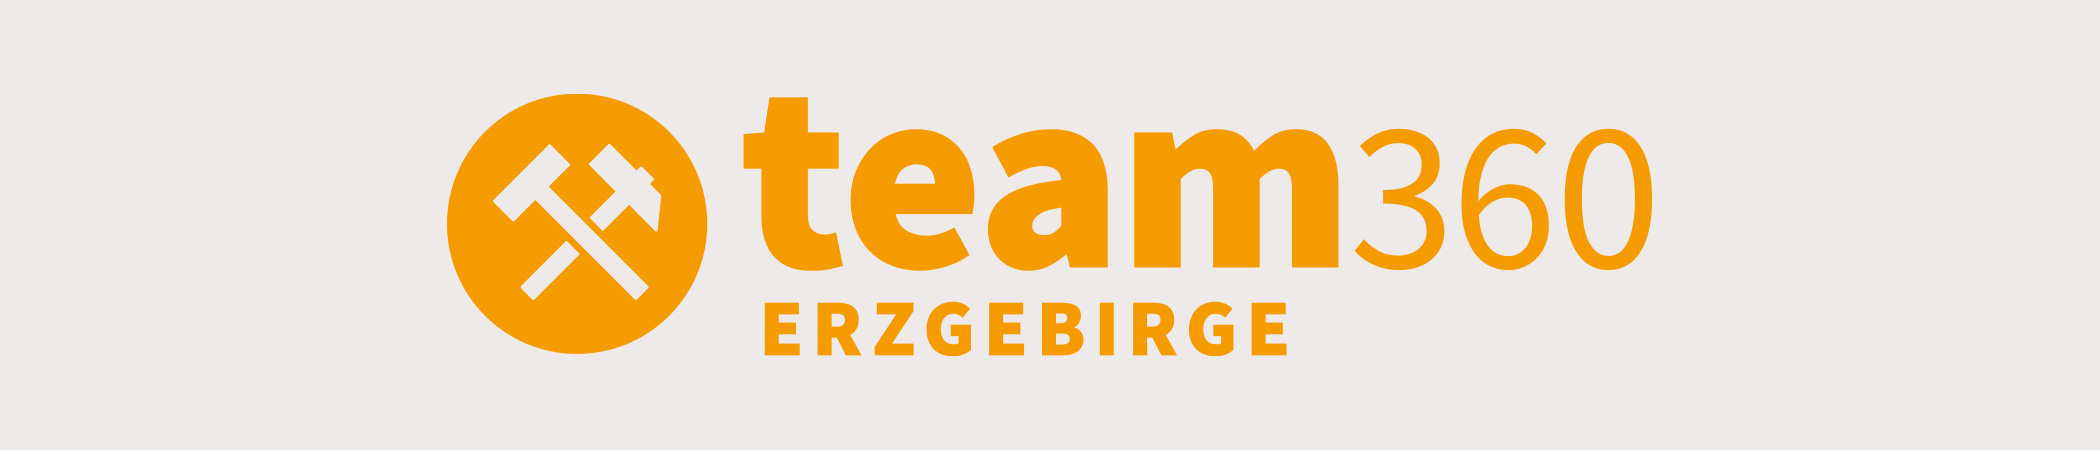 Team Erzgebirge | 360 Grad Rundgänge im Erzgebirge